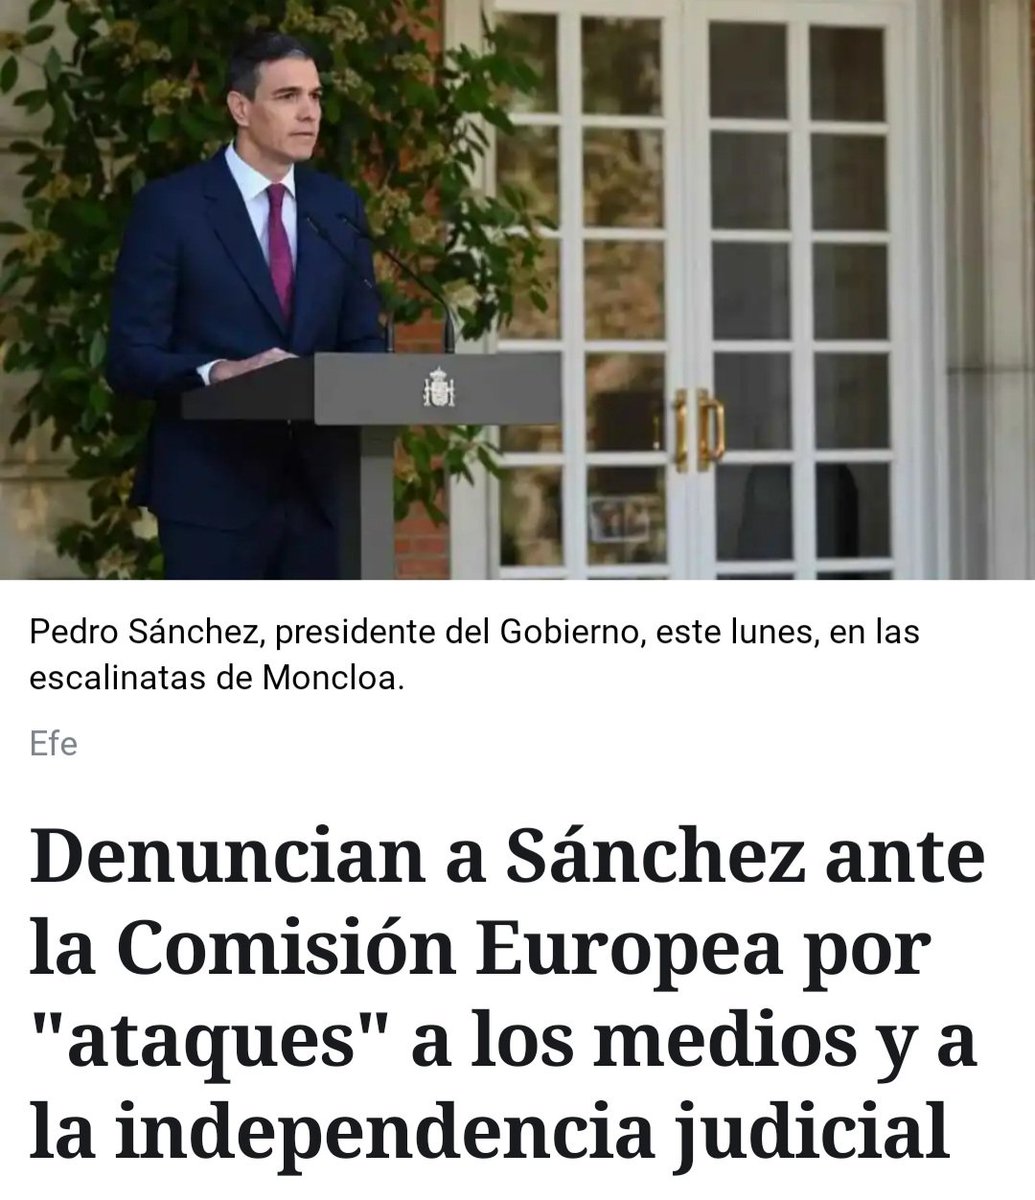 Este miserable autócrata actúa como un dictador y no puede seguir en el gobierno un minuto más #SanchezAPrisión